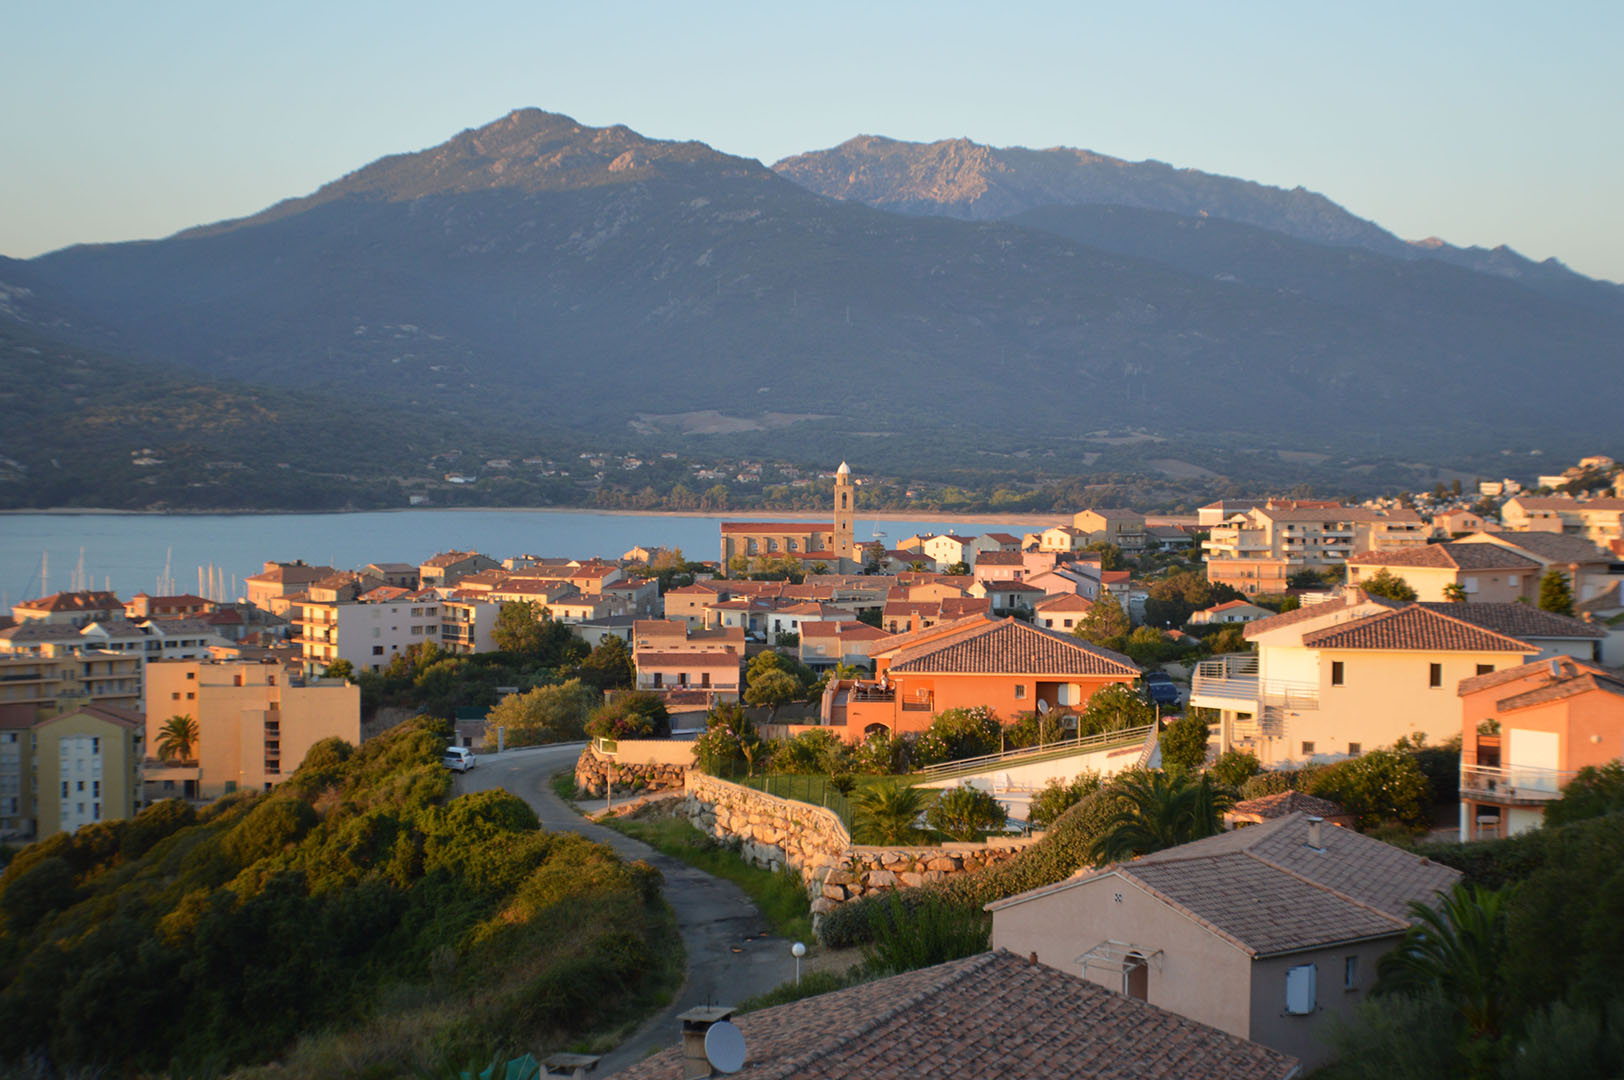 France - Corse - Propriano - Résidence Terra Thea avec vols vacances